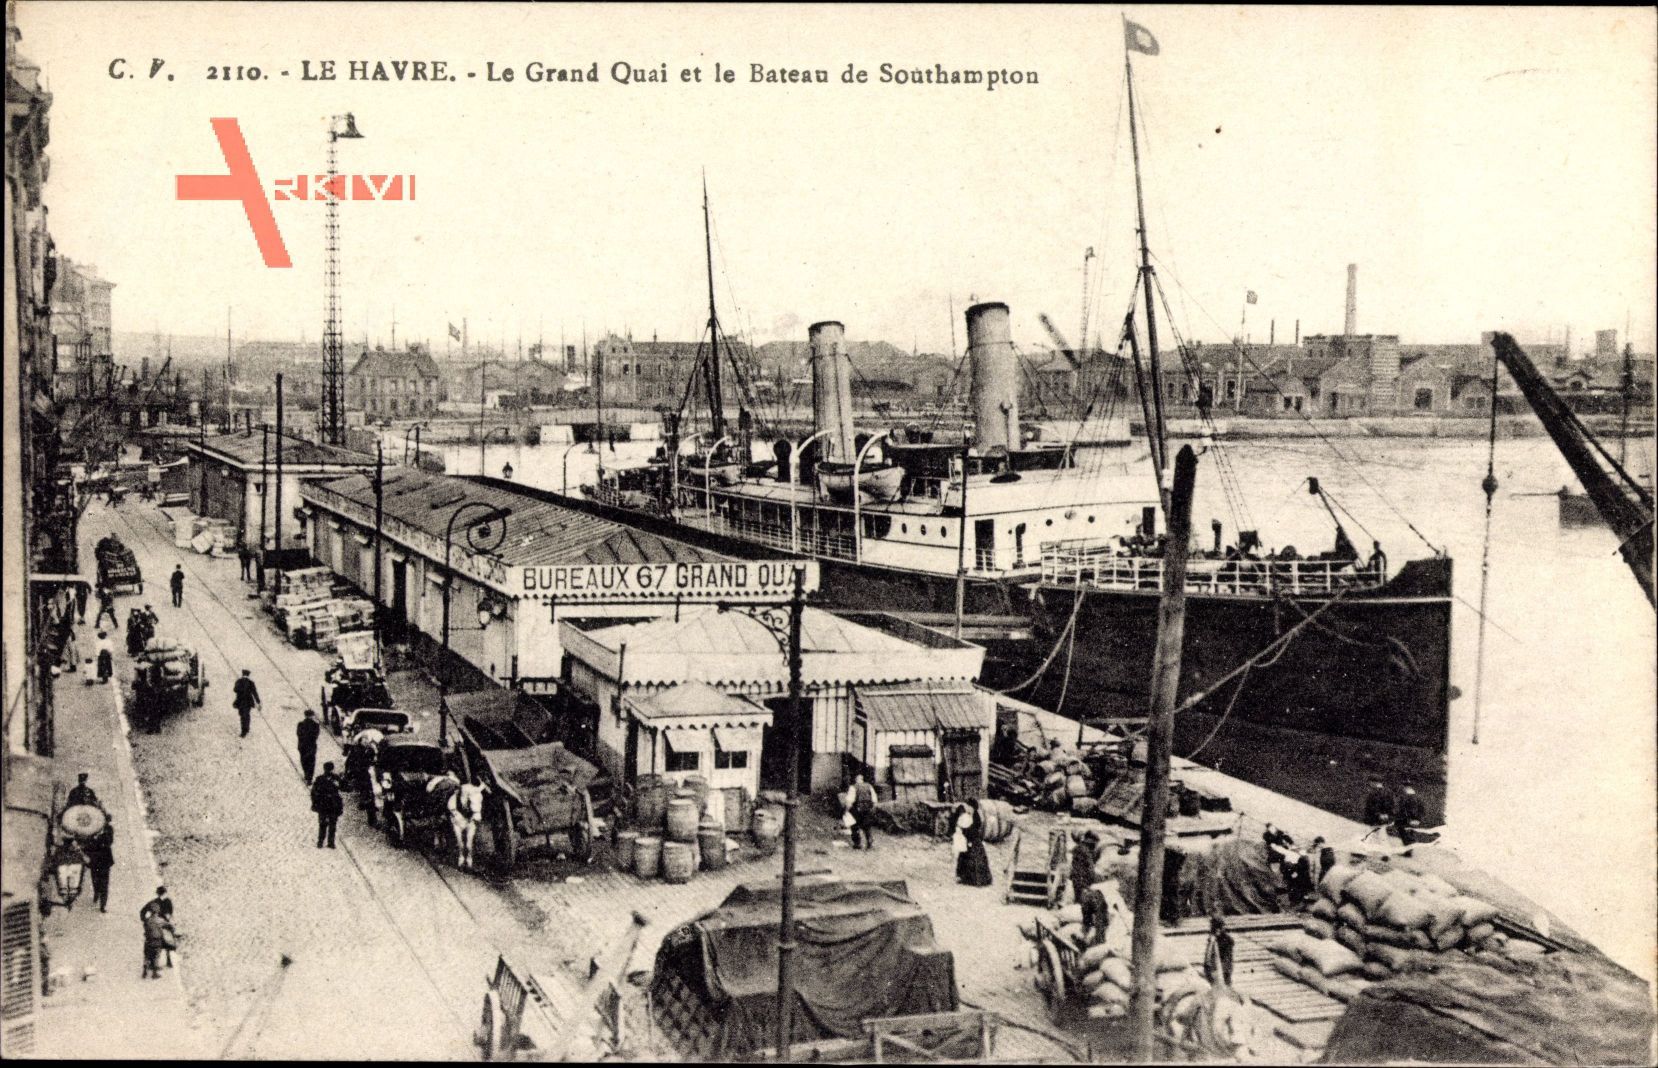 Le Havre Seine Maritime, Le Grand Quai et le Bateau de Southampton